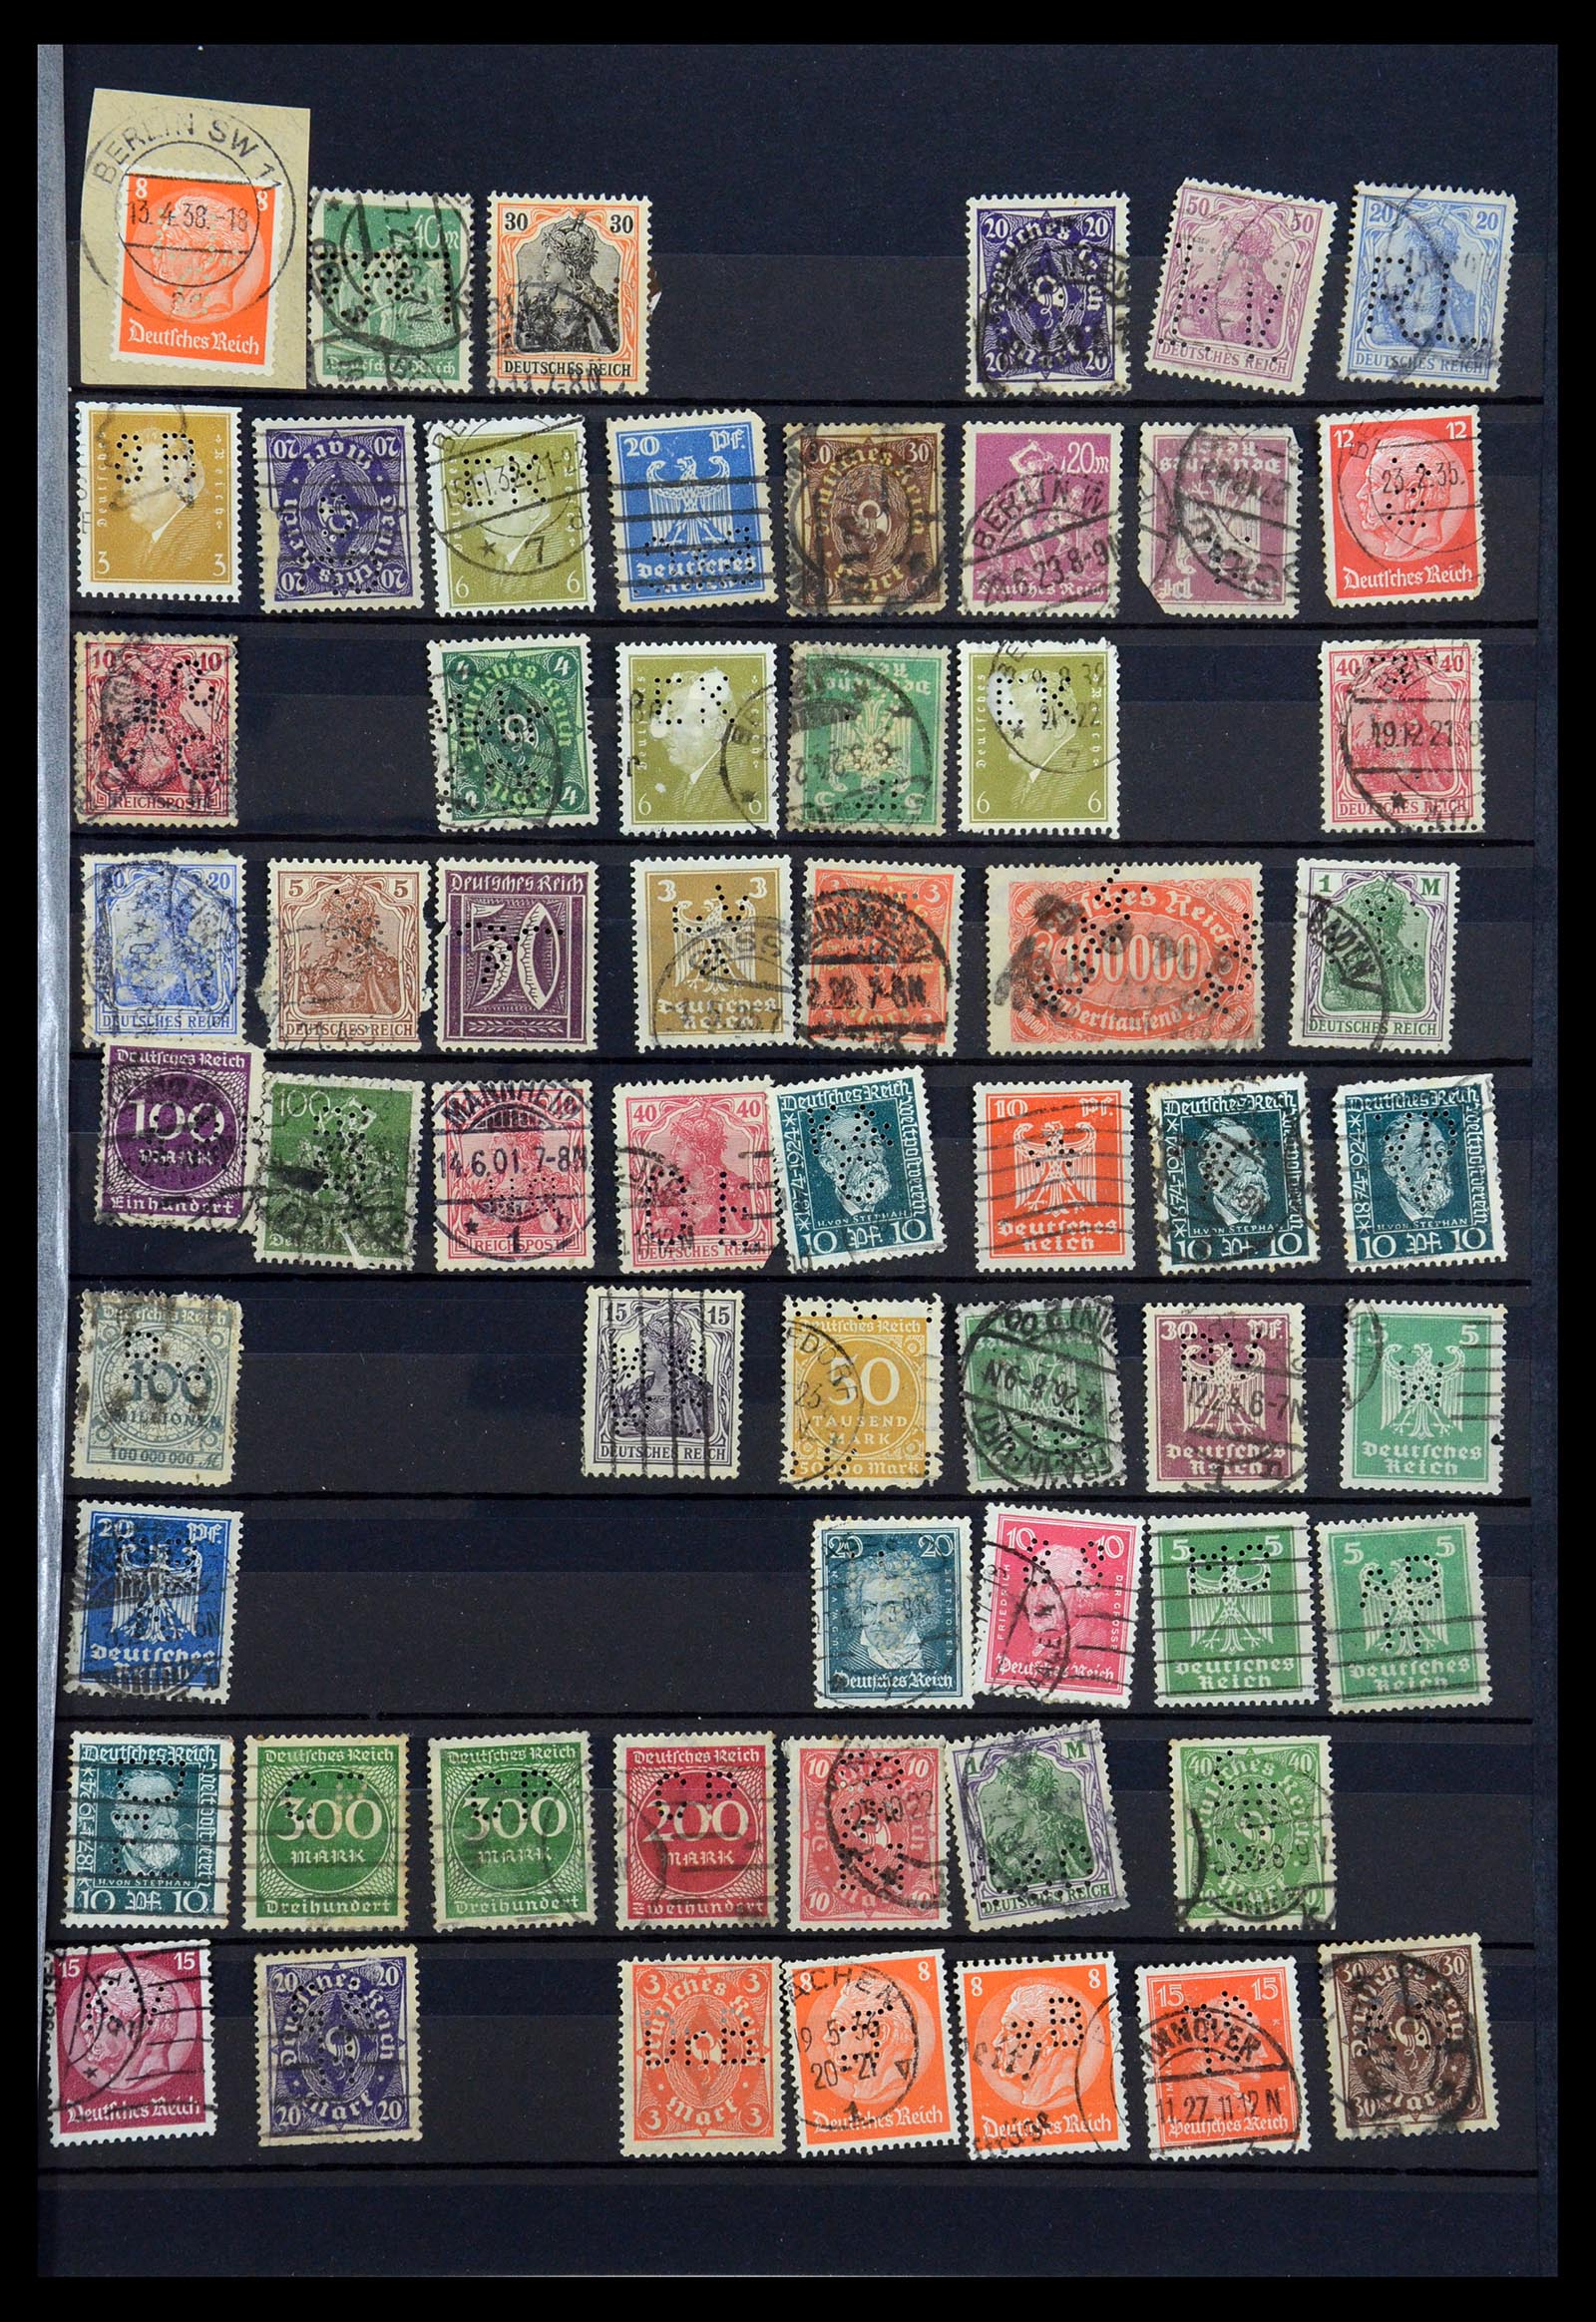 35183 015 - Stamp Collection 35183 German Reich perfins 1880-1945.